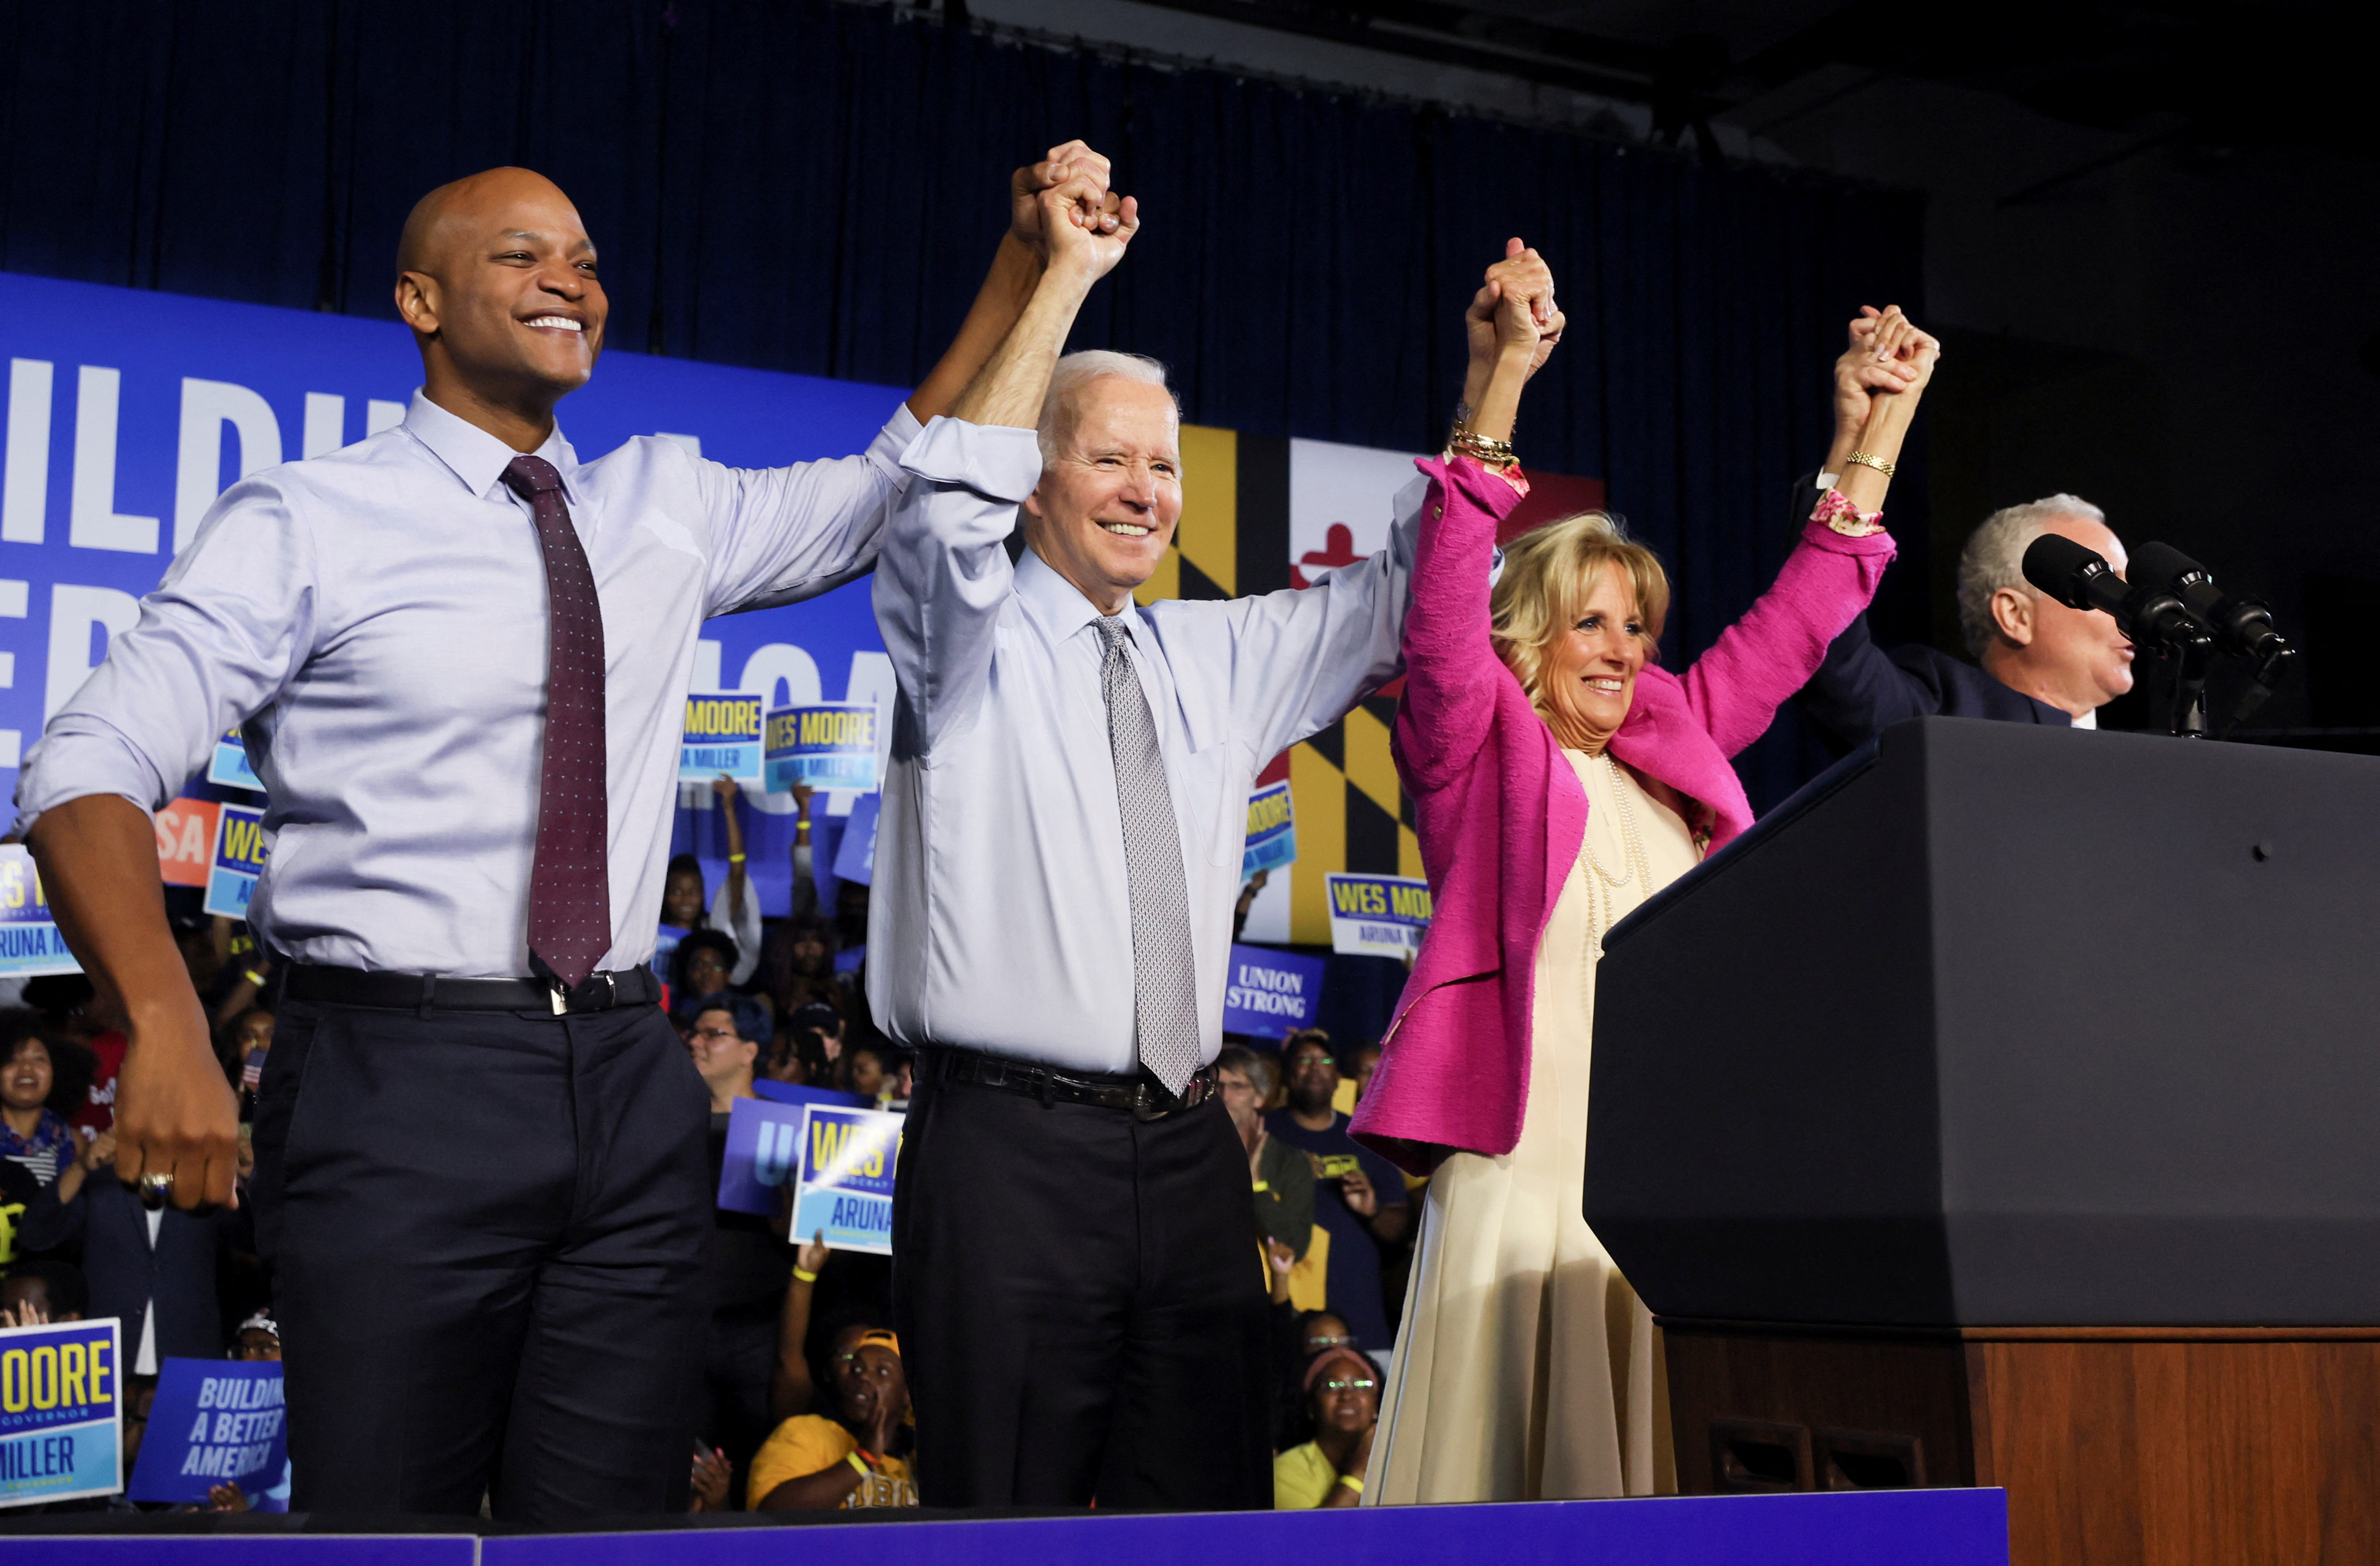 Wes Moore venció al candidato republicano apoyado por Donald Trump y se convirtió en gobernador de Maryland. En la foto junto al presidente Joe Biden y la primera dama, Jill Biden (Reuters)